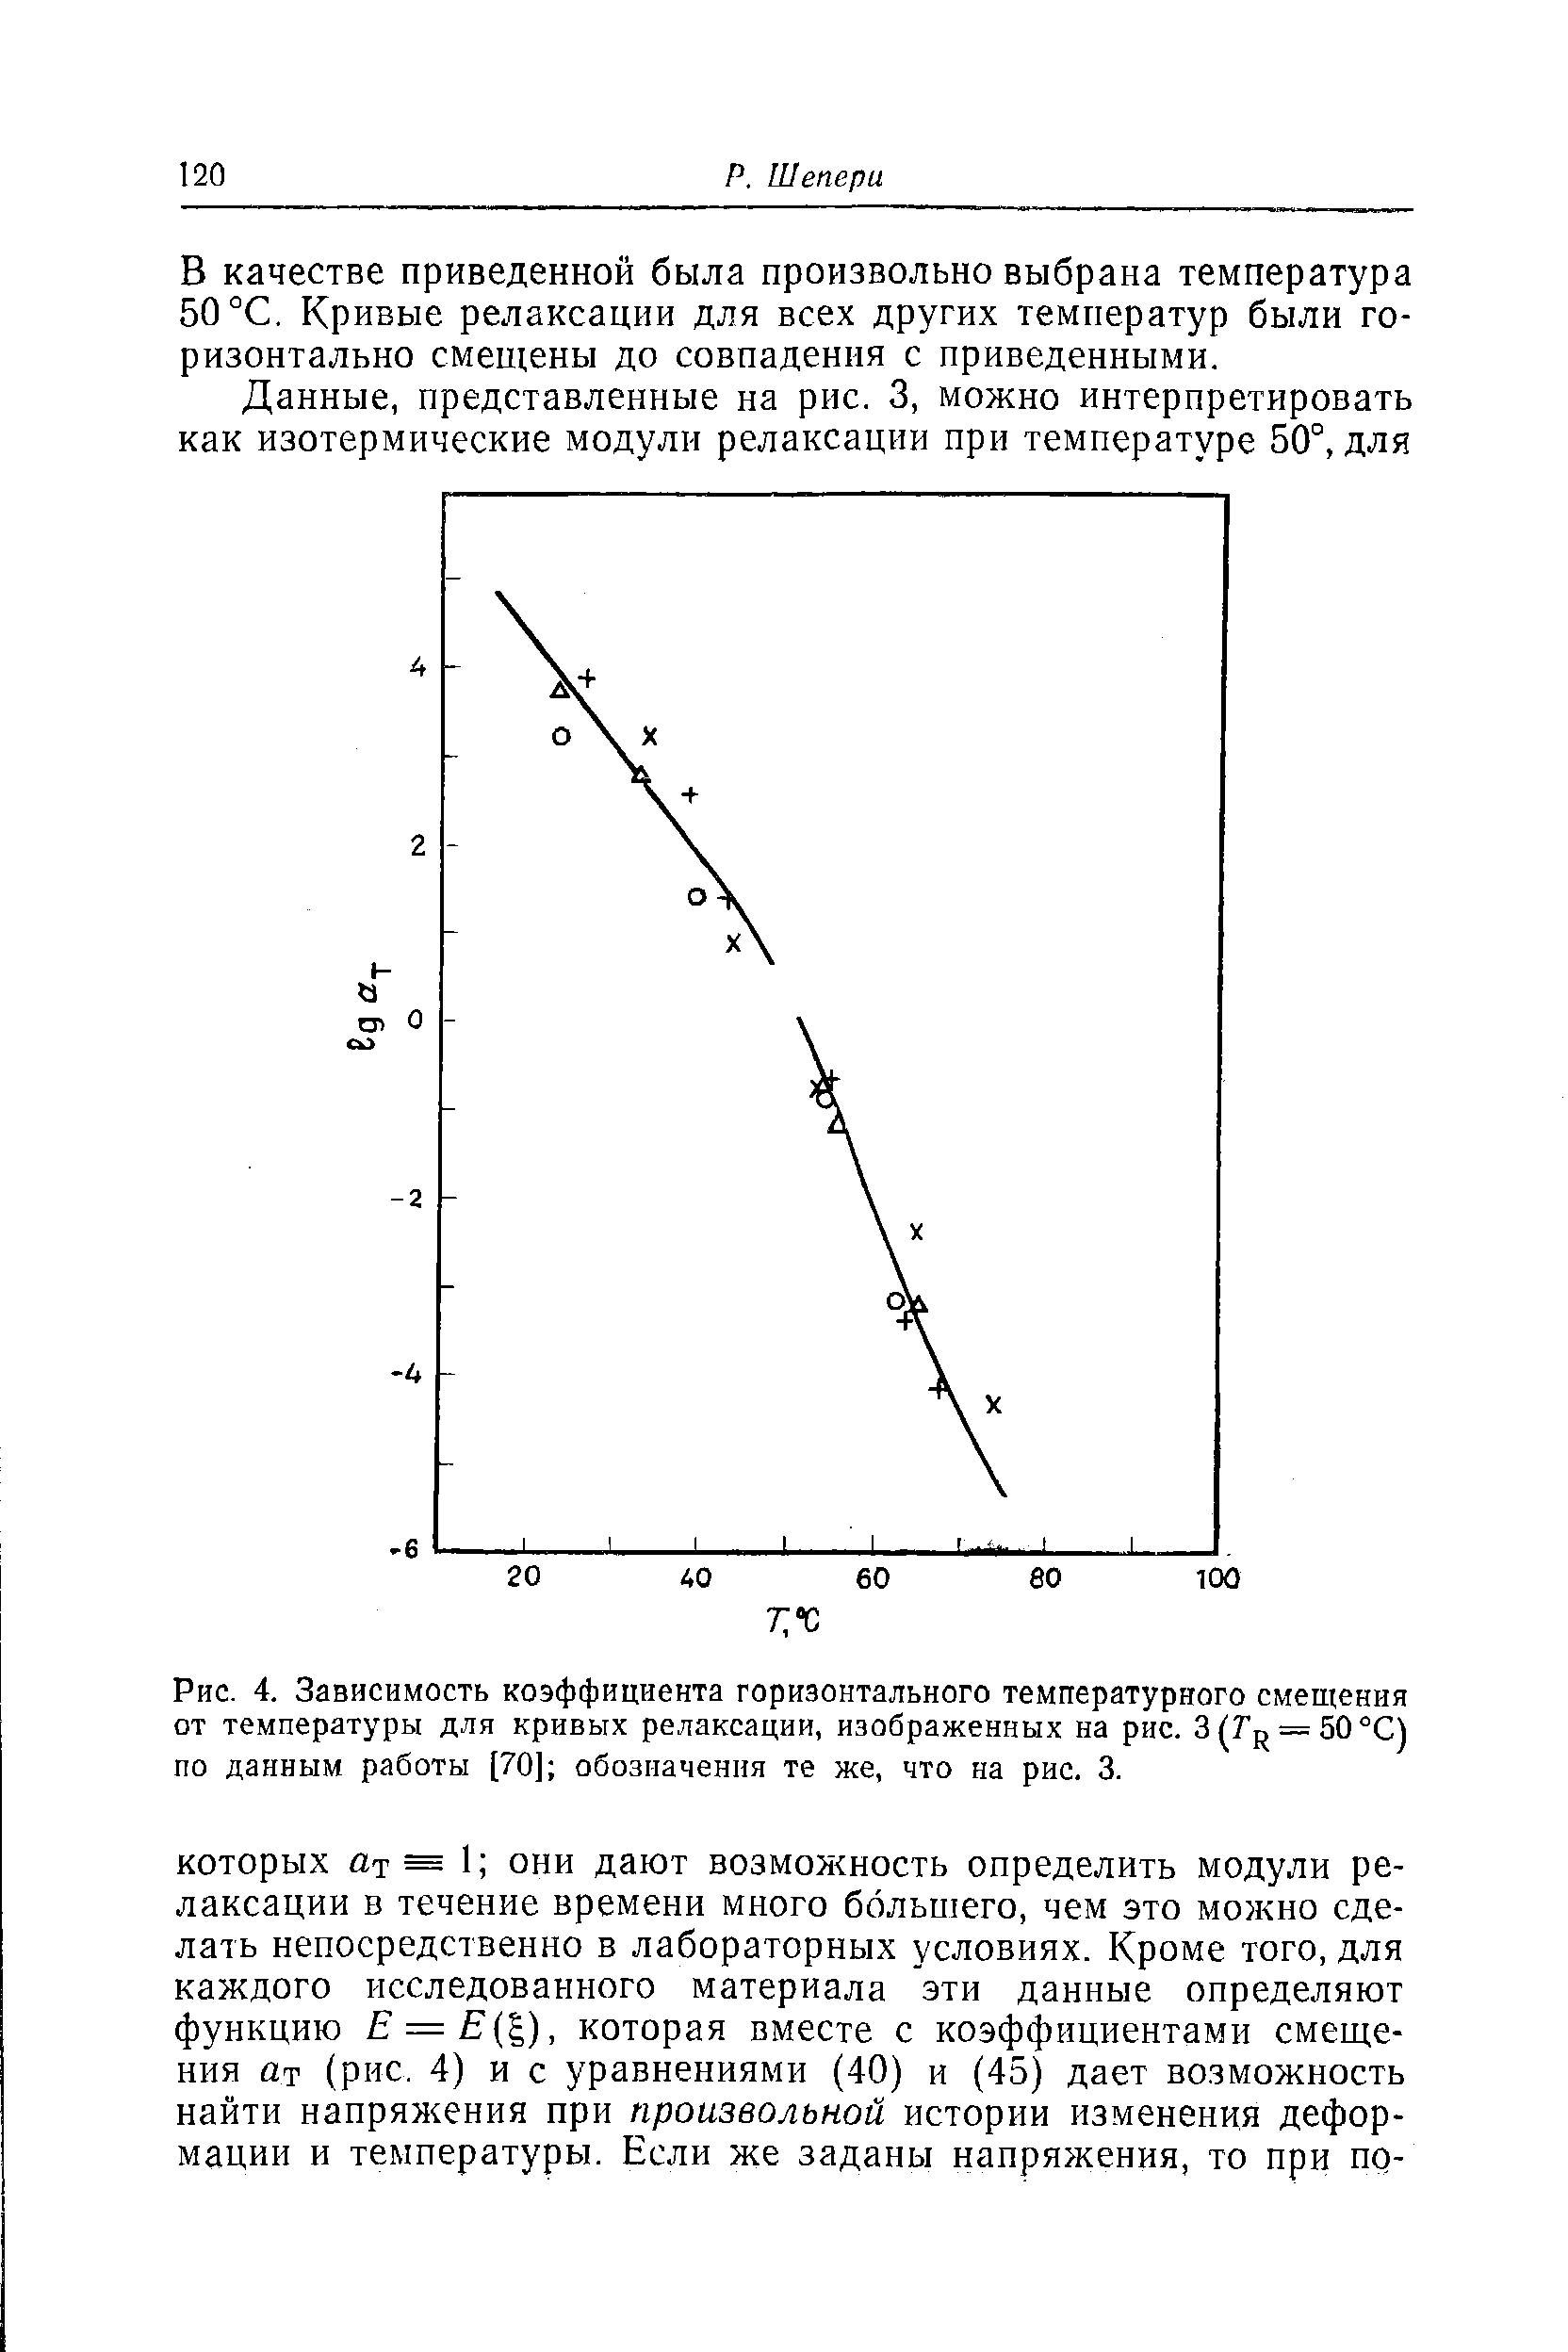 Рис. 4. Зависимость коэффициента горизонтального температурного смещения от температуры для кривых релаксации, изображенных на рис. 3(Г = 50°С) по данным работы [70] обозначения те же, что на рис. 3.
